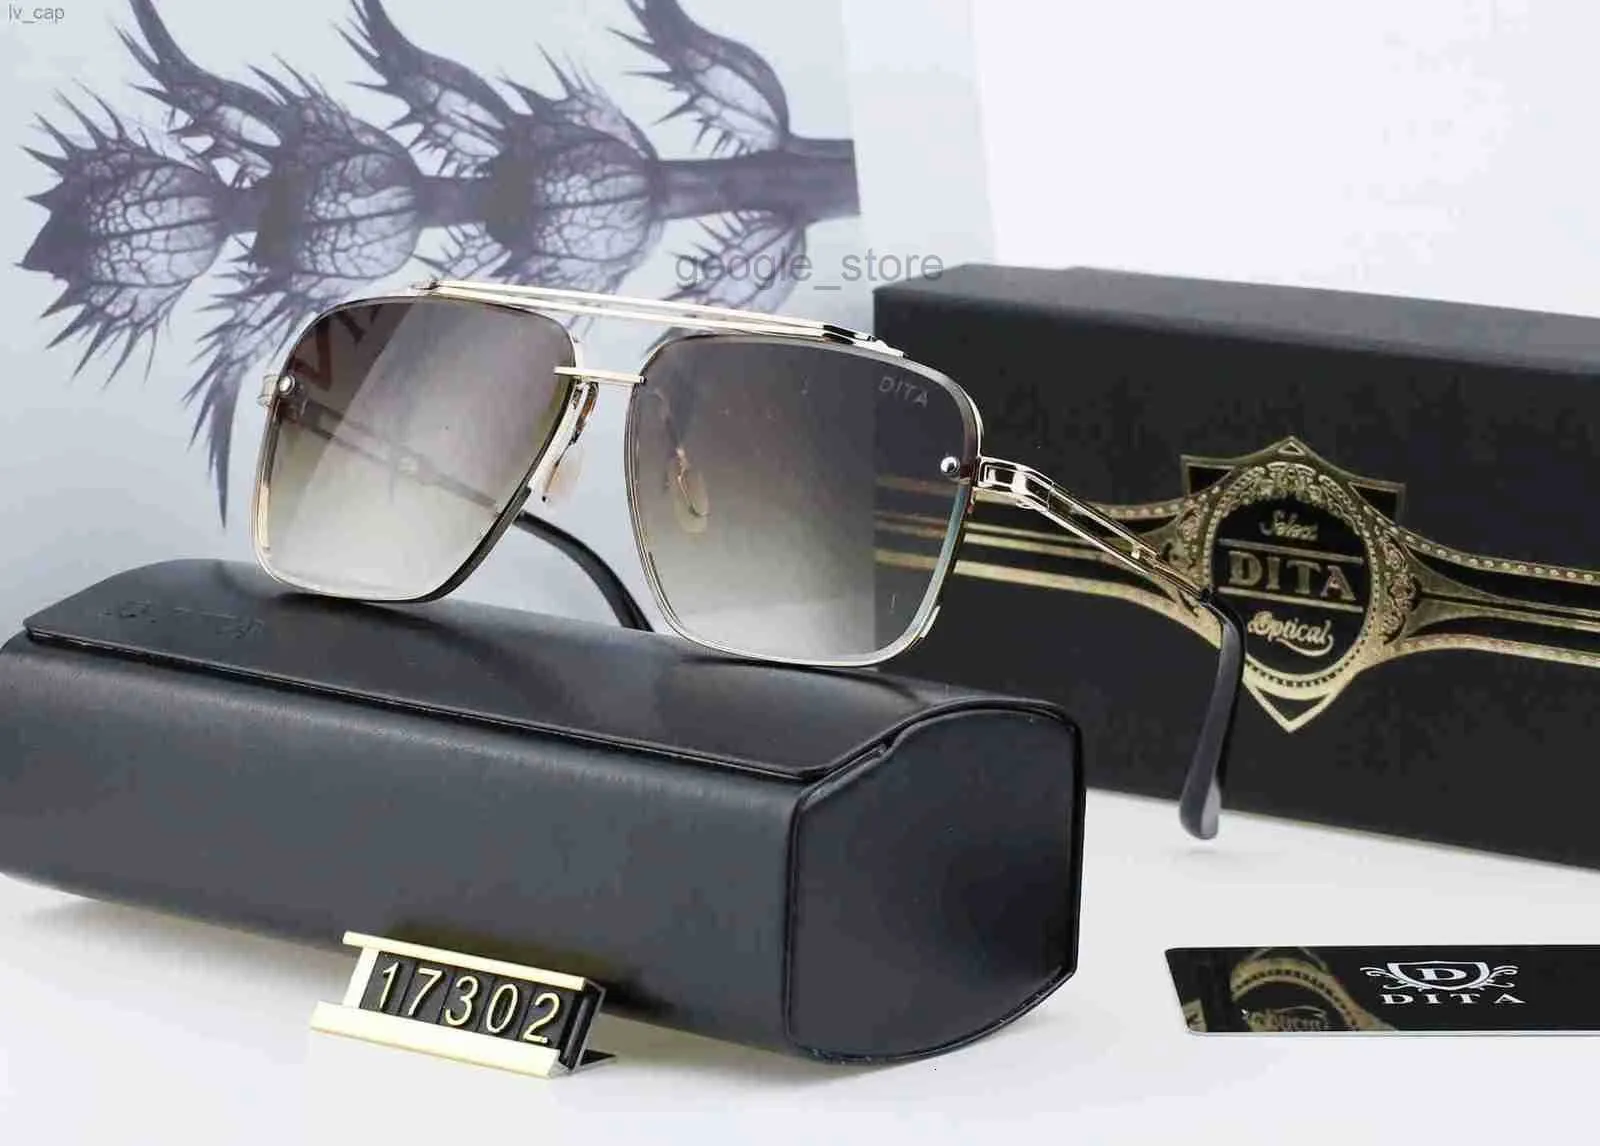 Dita 17302 Designer Glass de sol mulheres Óculos Tons ao ar livre PC Moda Moda Classic Lady Sun Mirrors Sunglasses Sunglasses